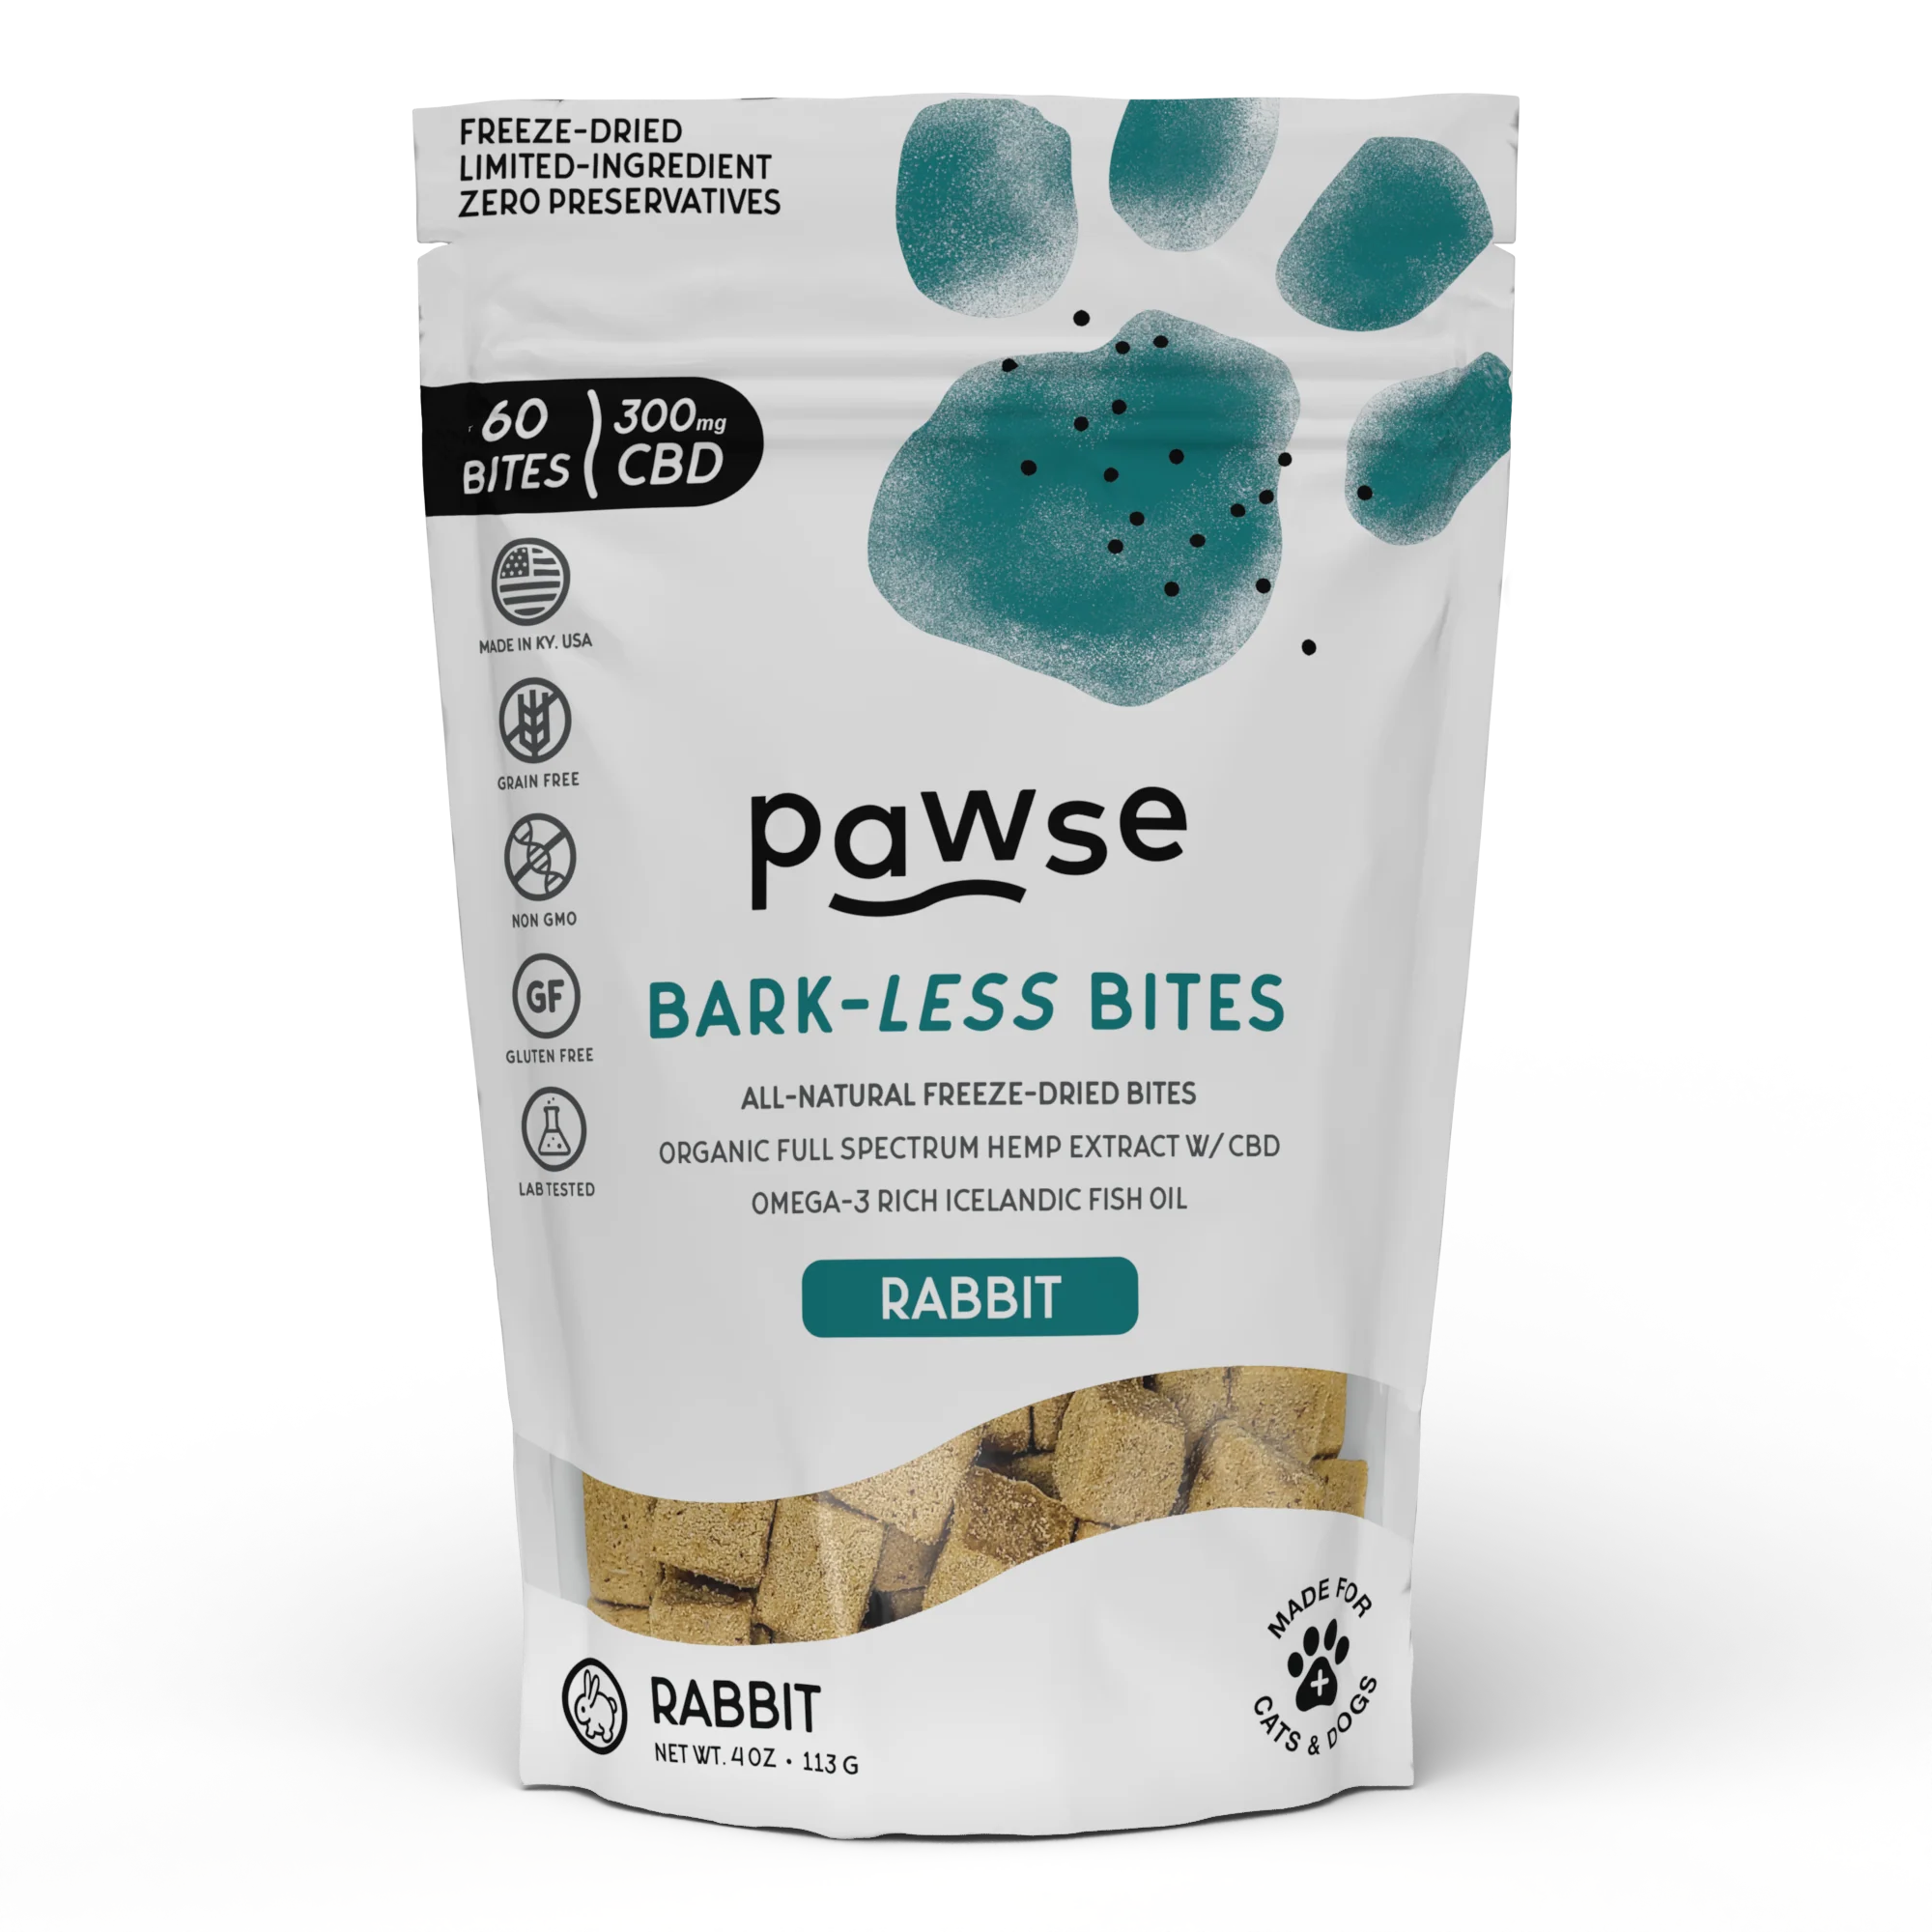 Pawse Bark-Less Bites - 300 MG Organic CBD (5 MG CBD Per Bite) - For All Pets